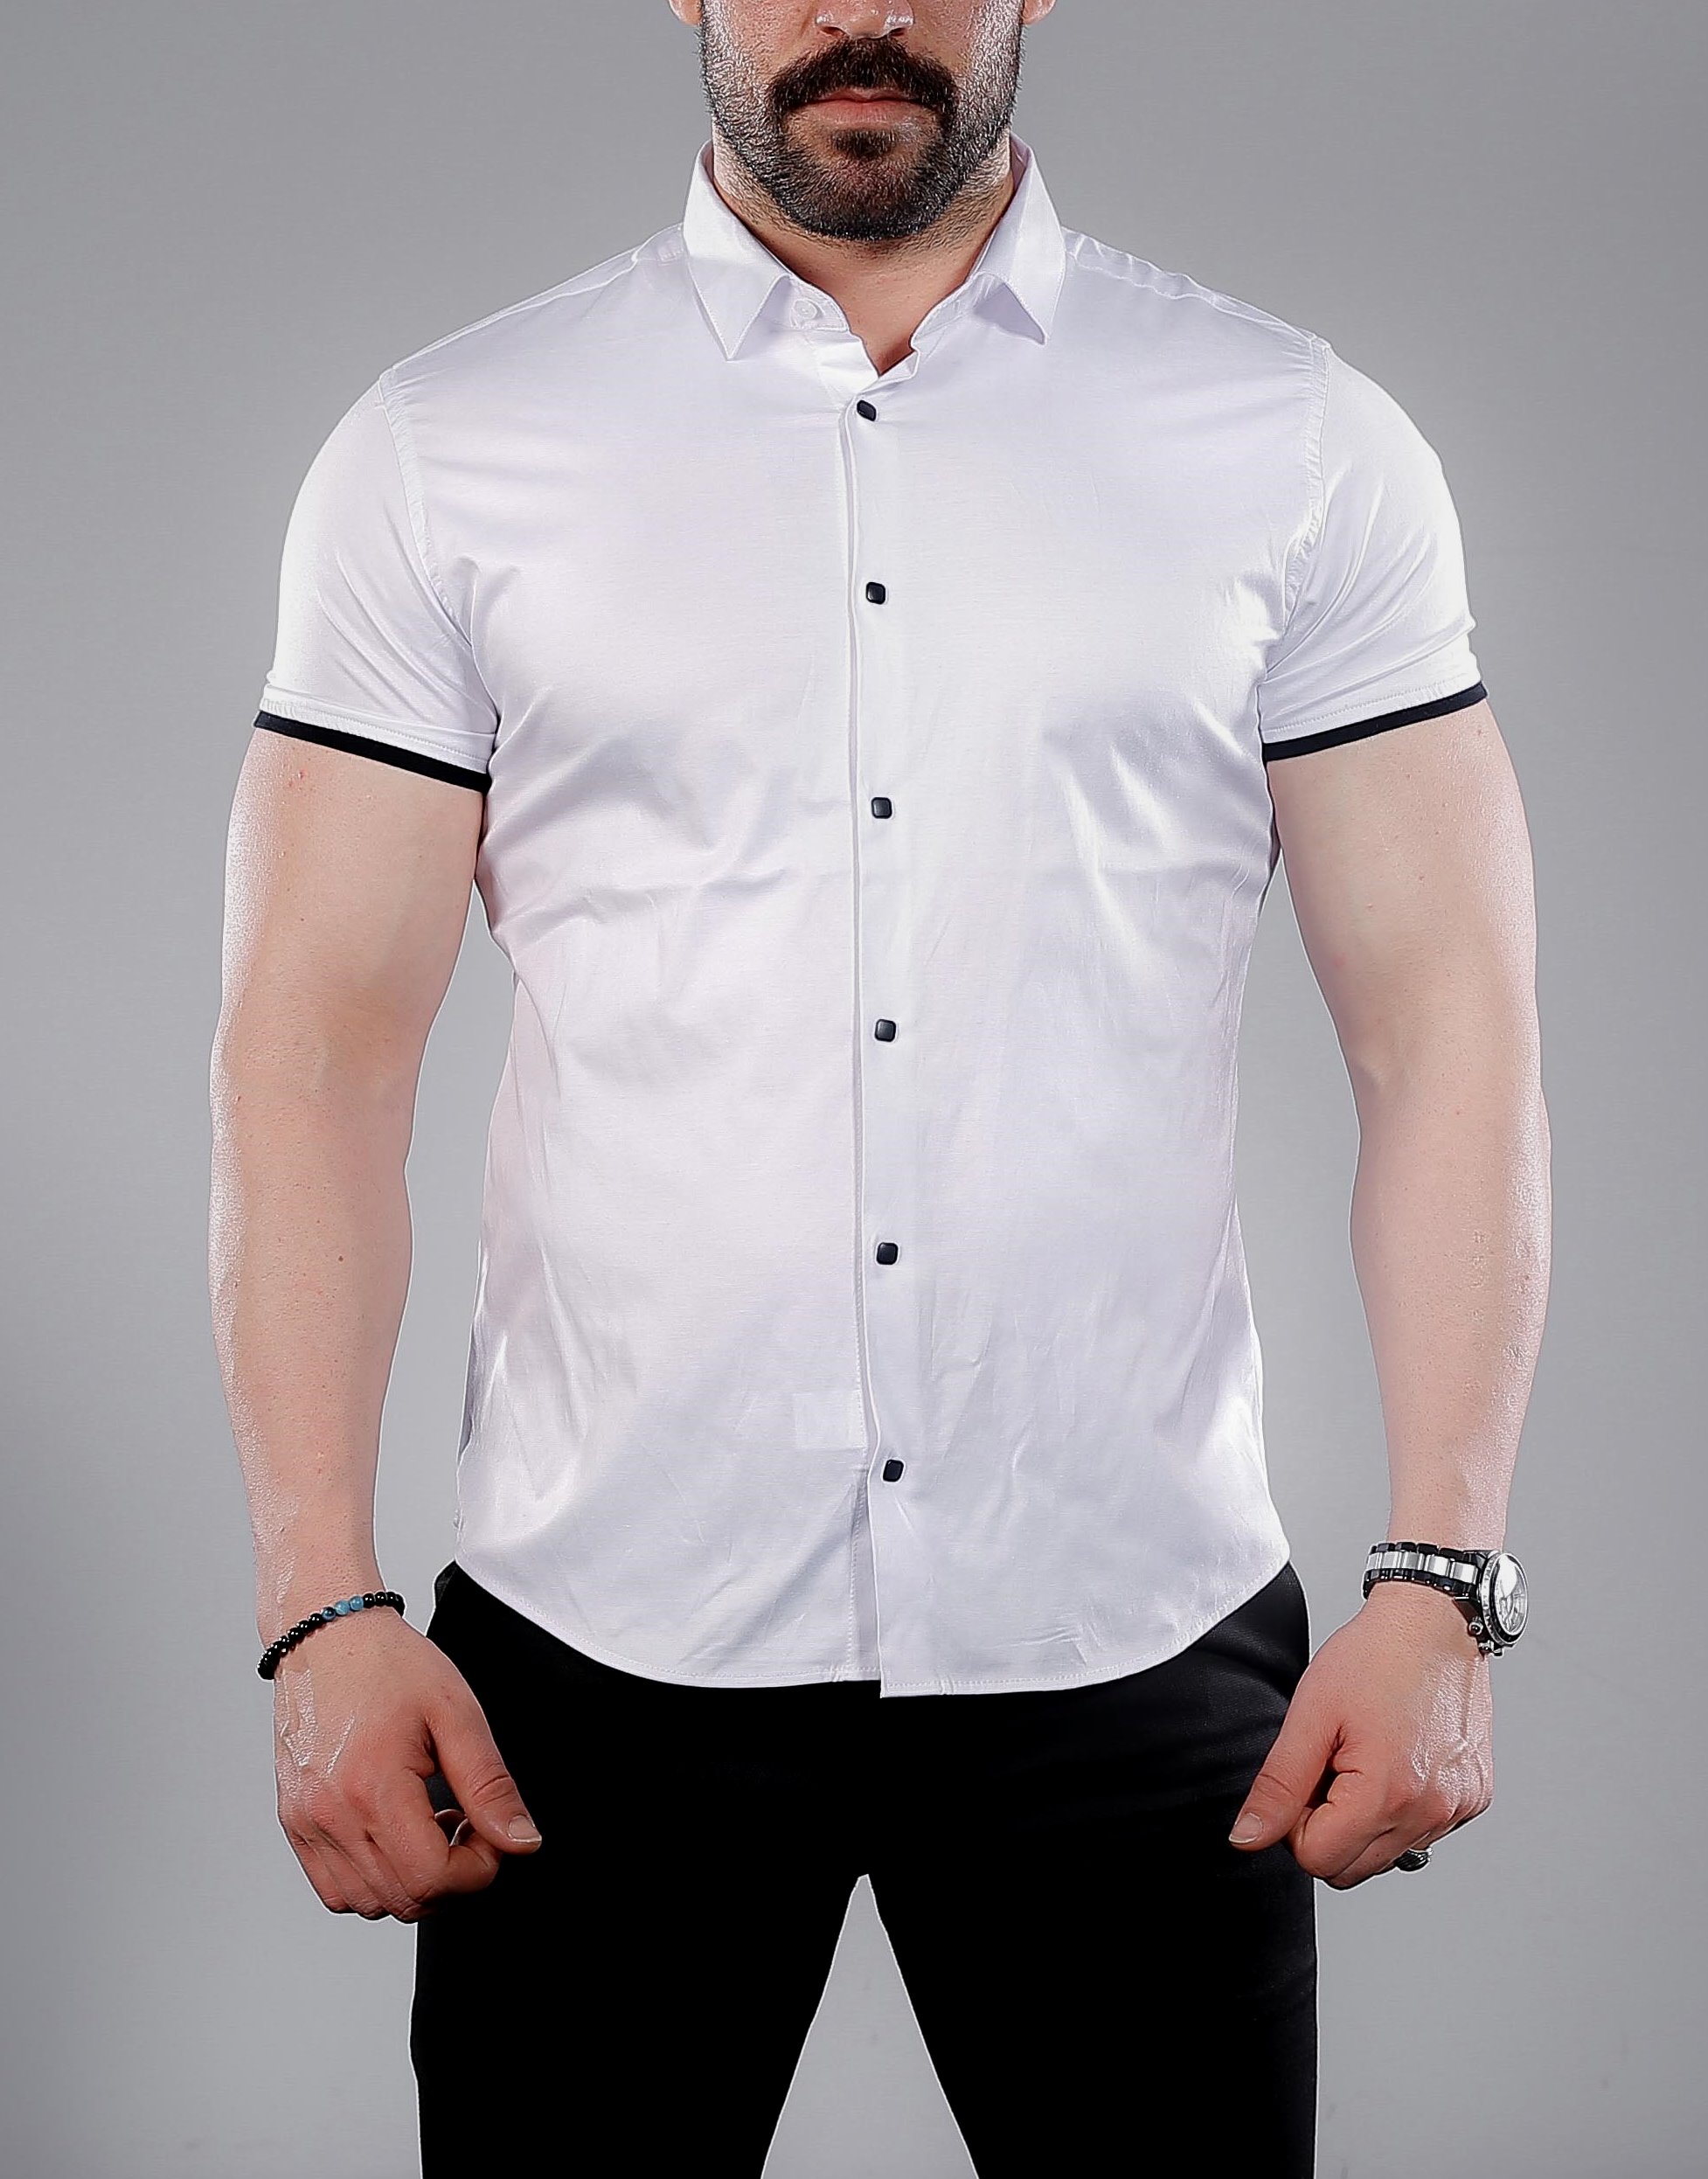 Купить белую рубашку с коротким рукавом. Рубашка мужская. Стильные мужские рубашки. Рубаха с коротким рукавом мужская. Мужская белая рубашка.